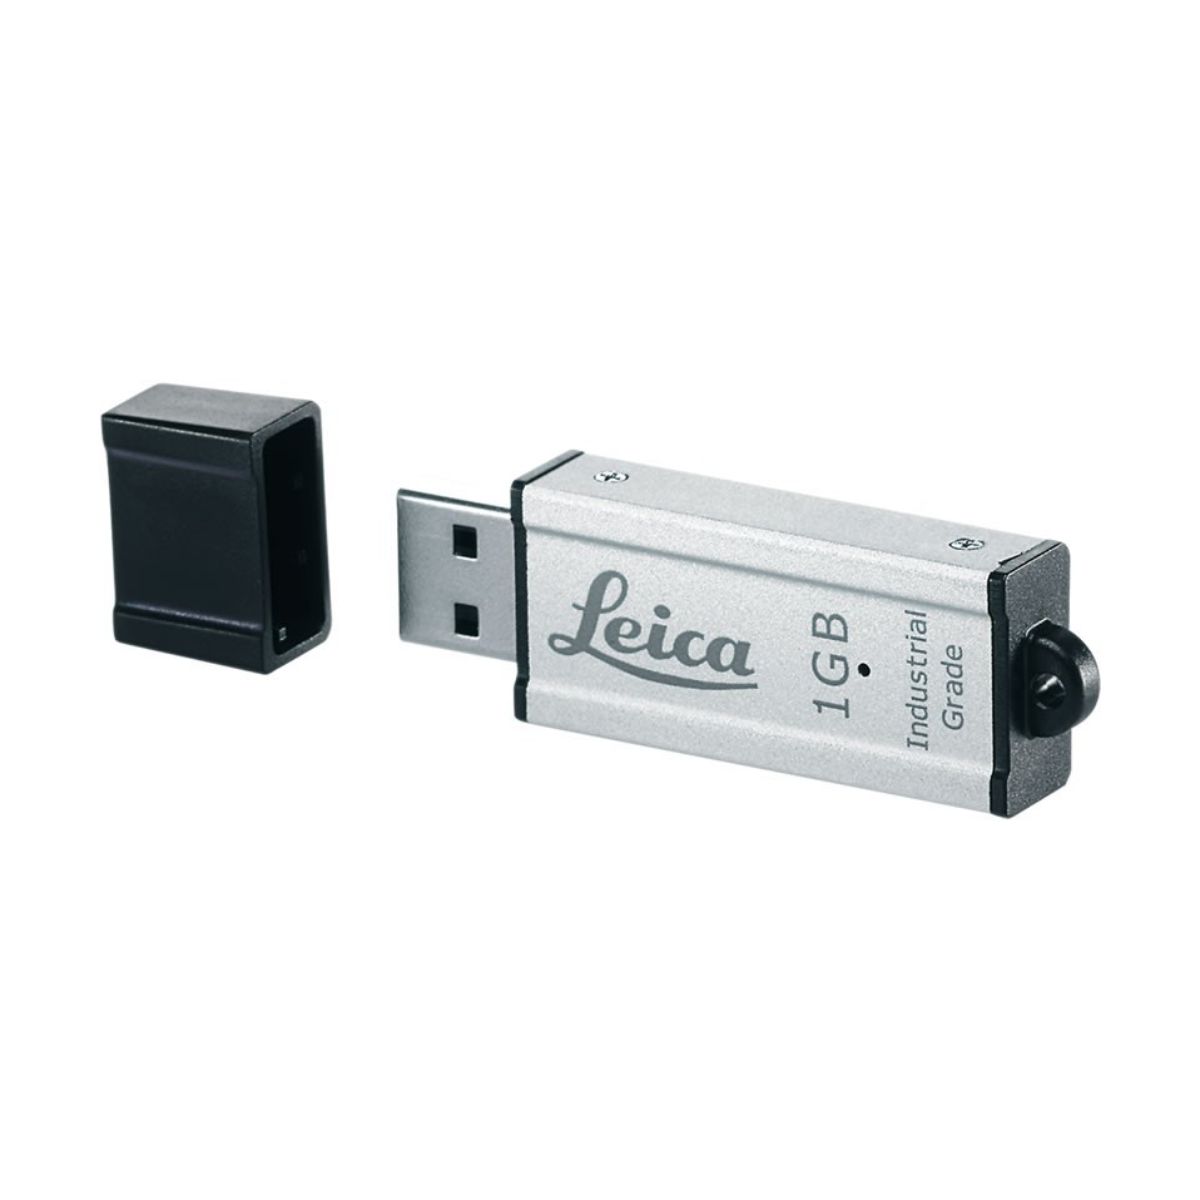 Clé USB Leica MS1 1Go - Lepont Equipements